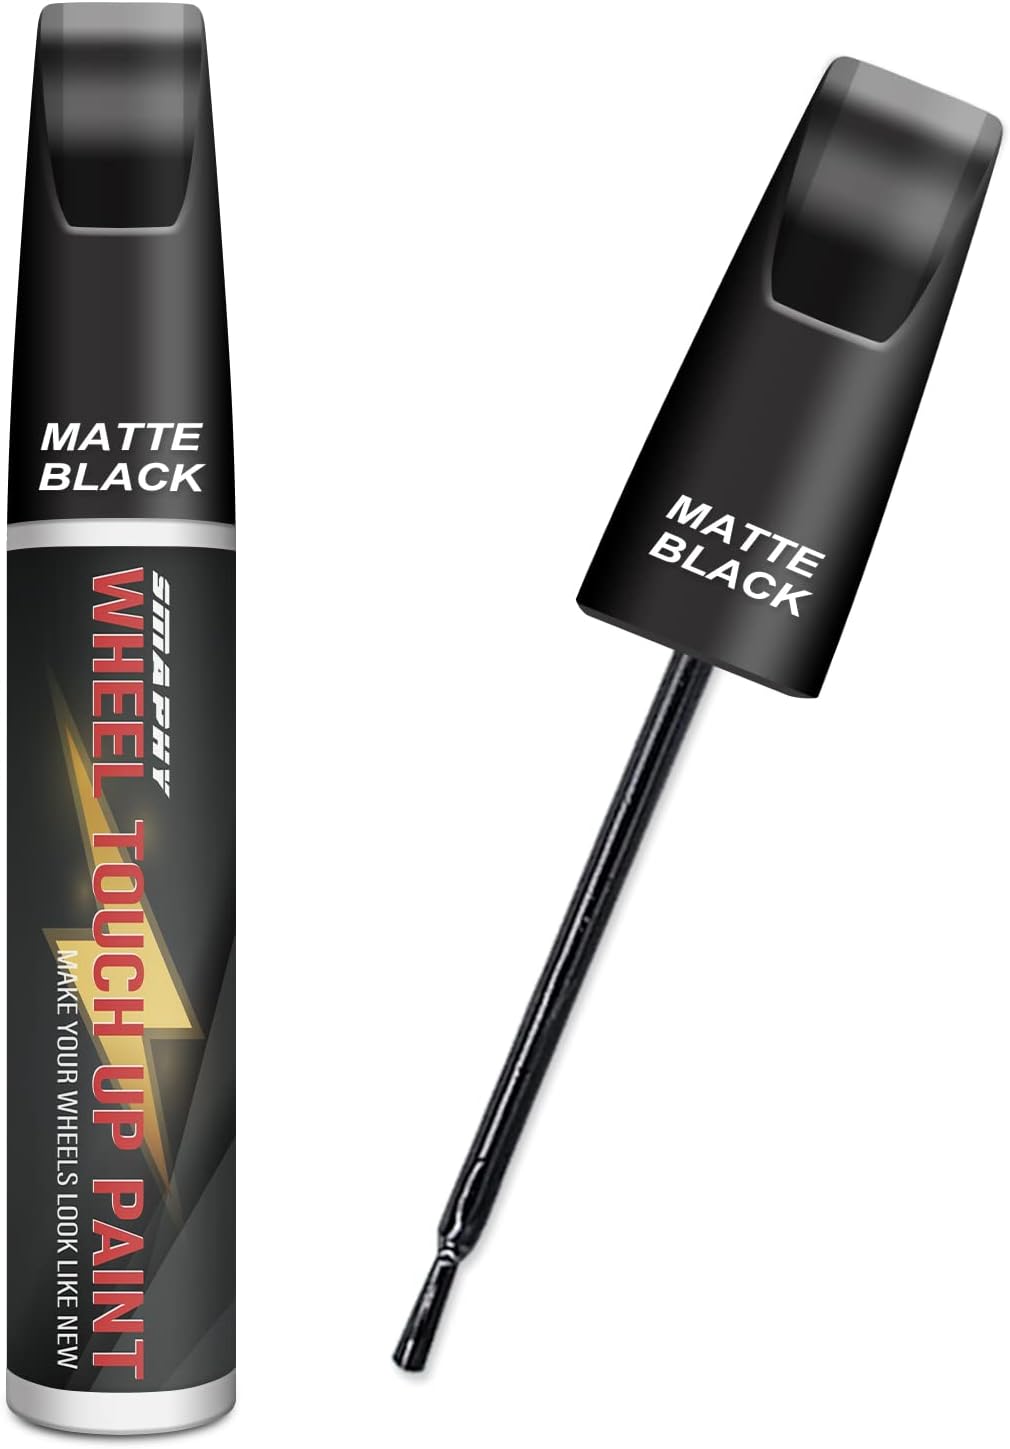 matte black auto paint review